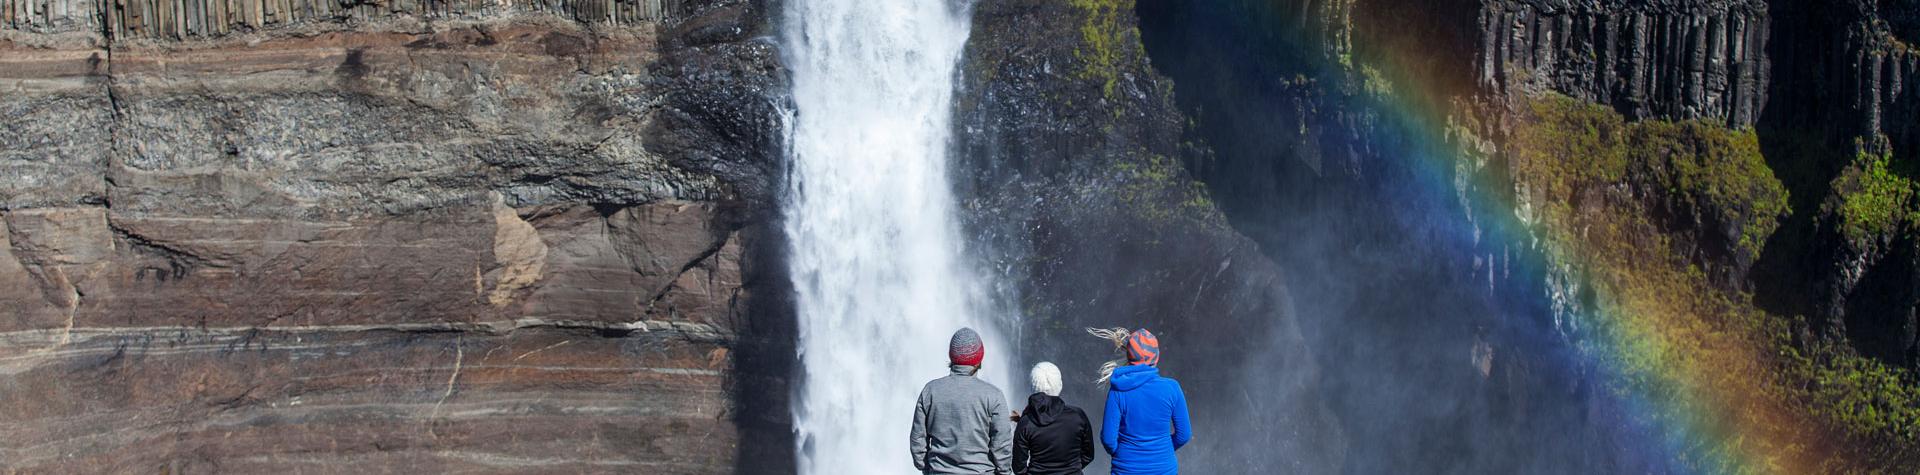 Grupptur vattenfall Island